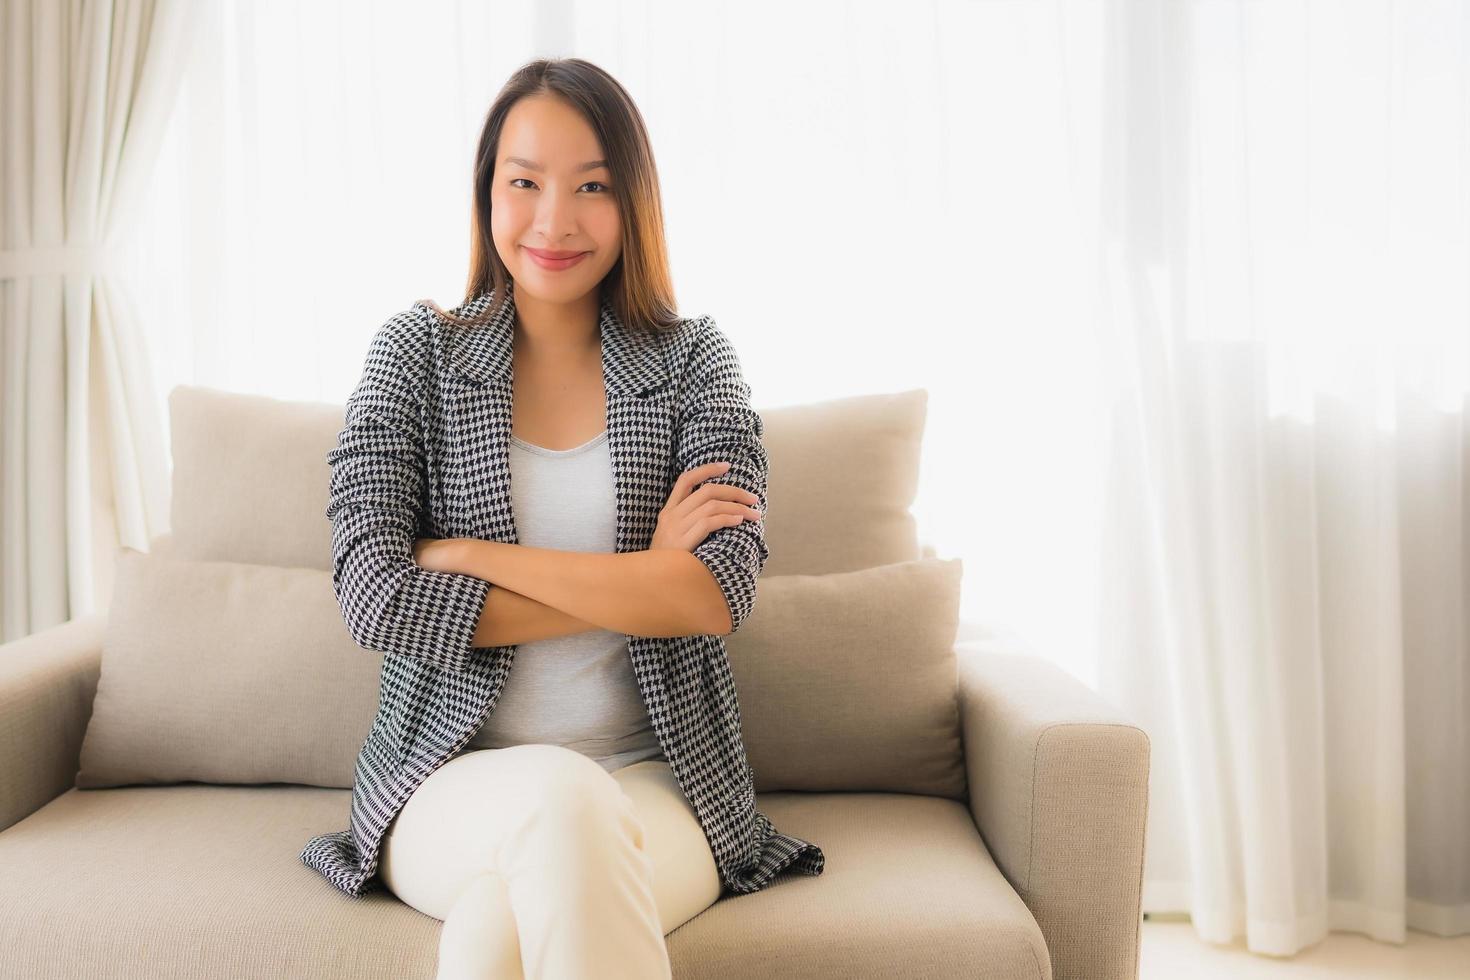 Portrait de belles jeunes femmes asiatiques sourire heureux se détendre assis sur une chaise canapé photo